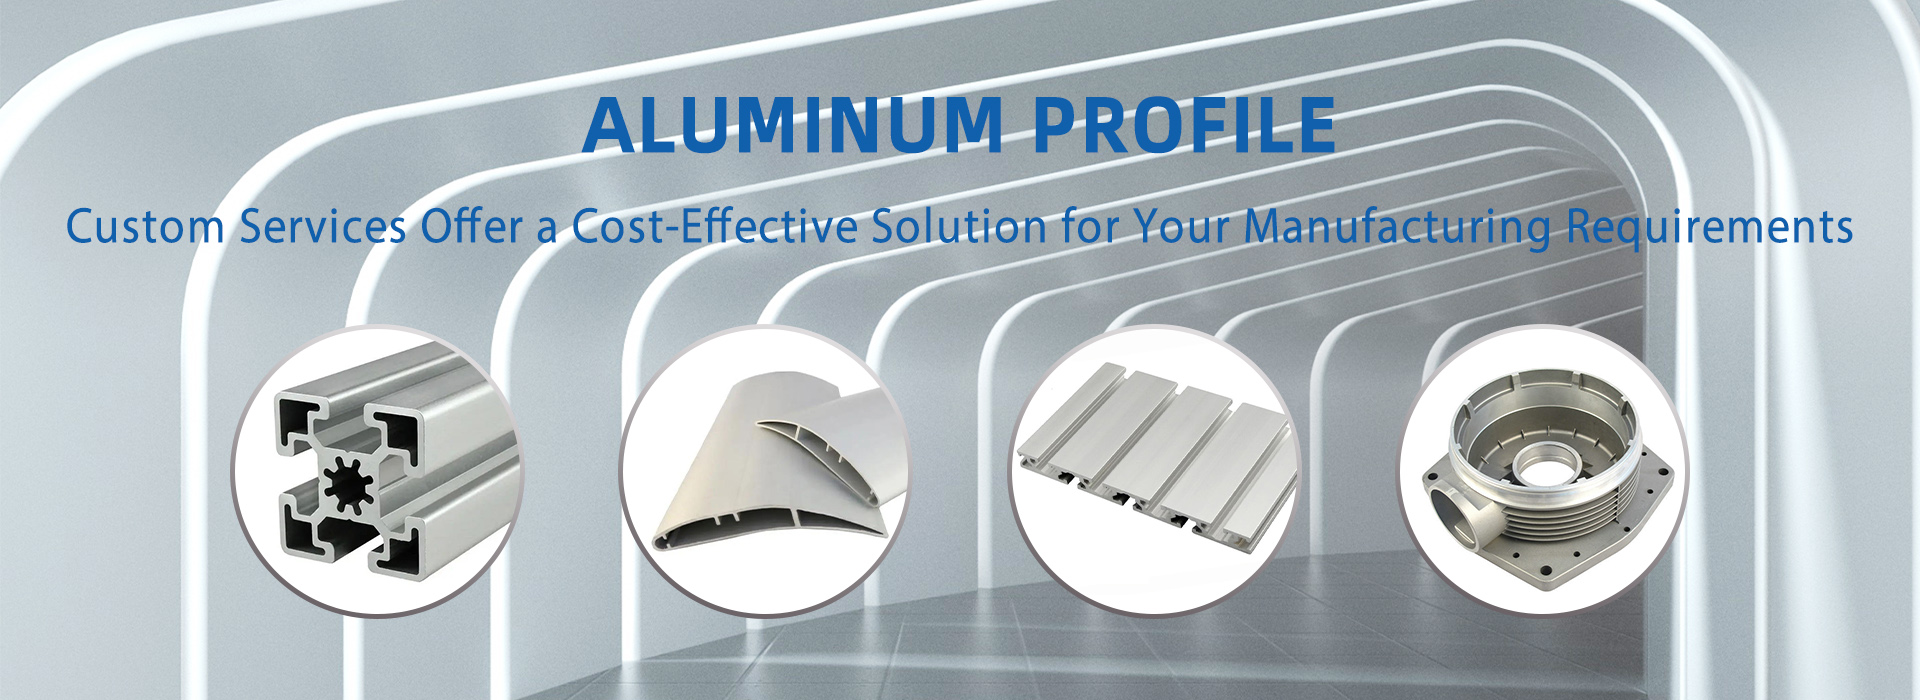 aluminum profile